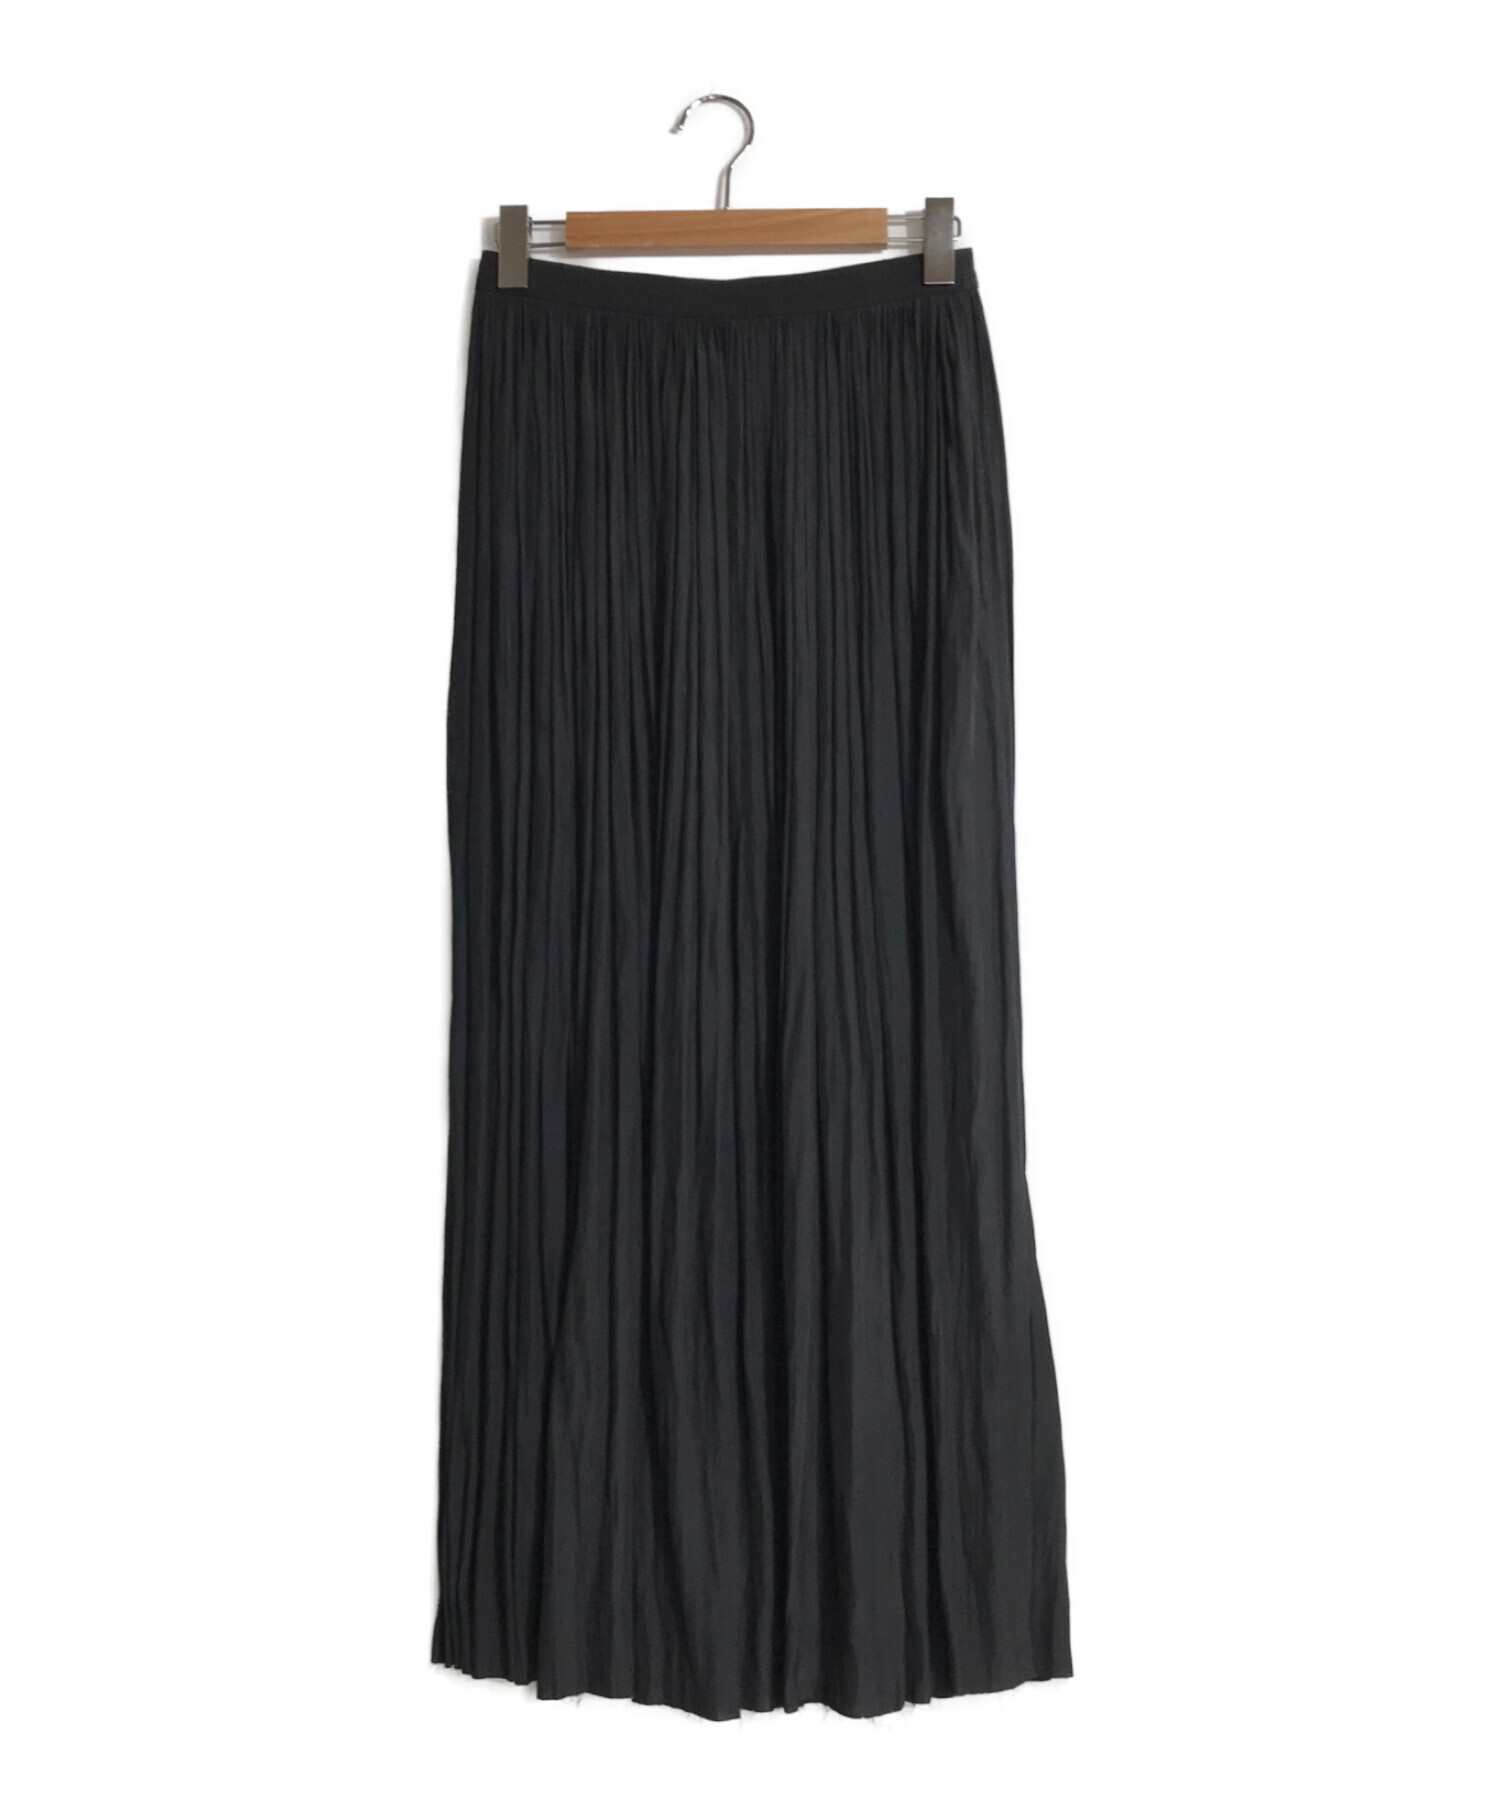 AP STUDIO サテンギャザースカート ブラック ⭐美品